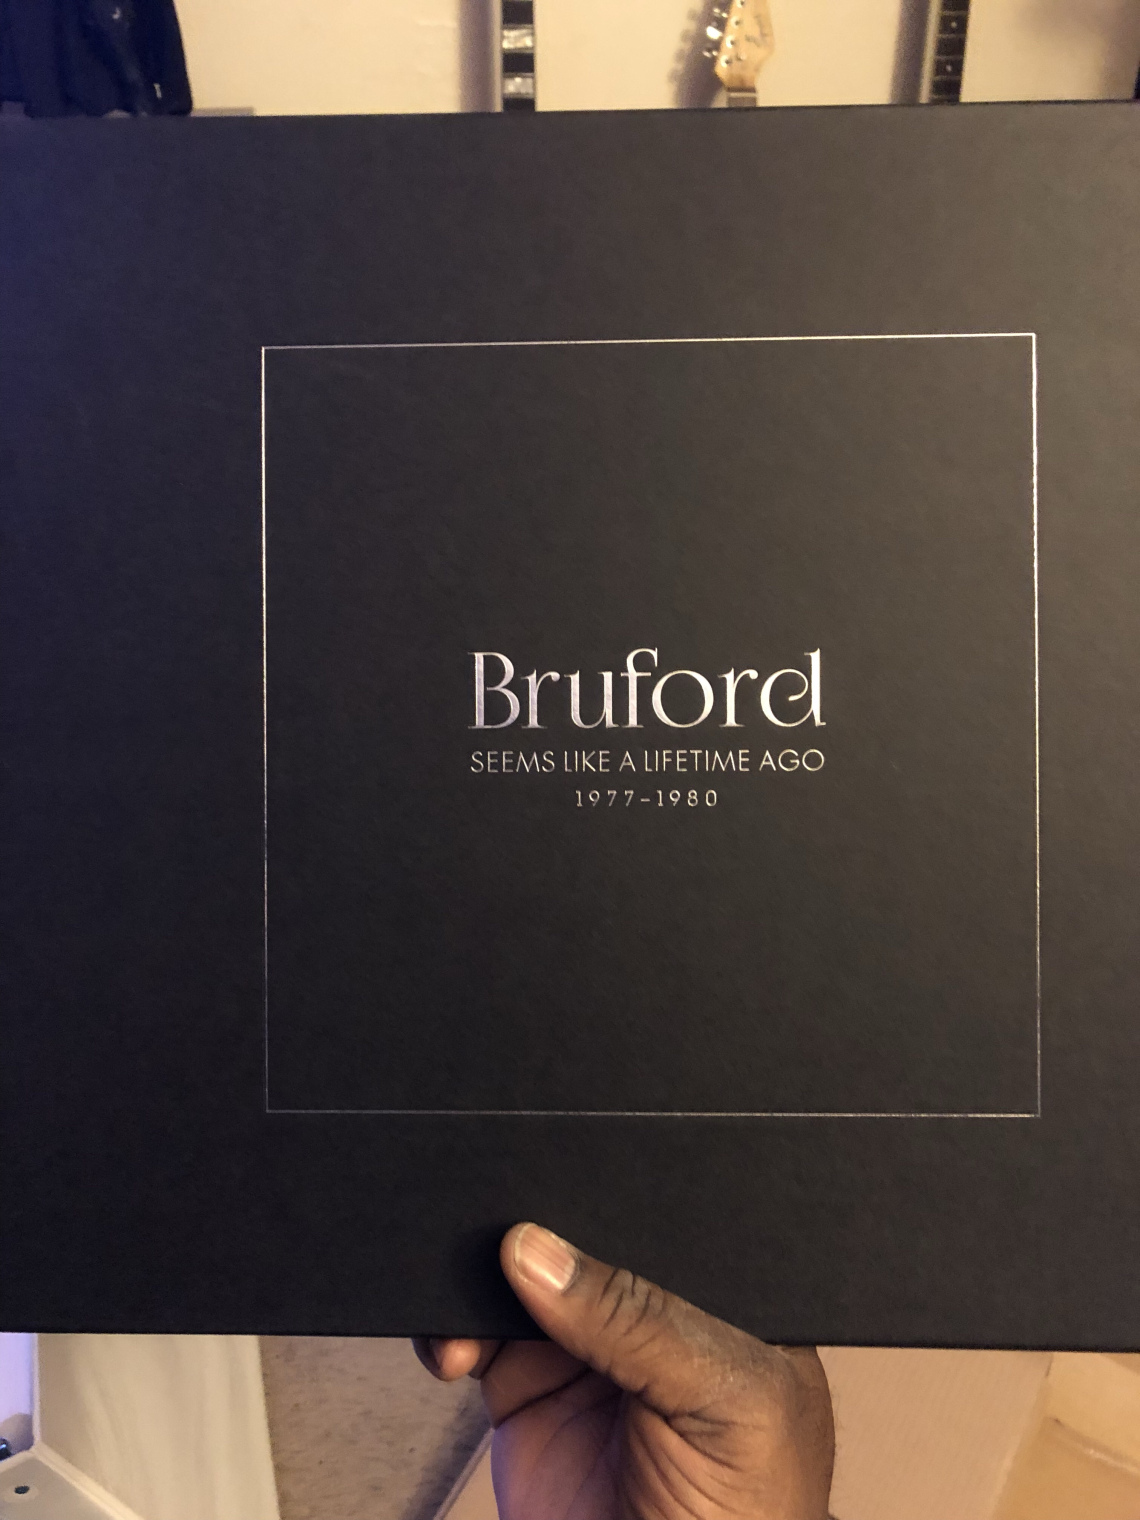 Album Review: “Bruford, Seems Like A Lifetime Ago (1977-1980